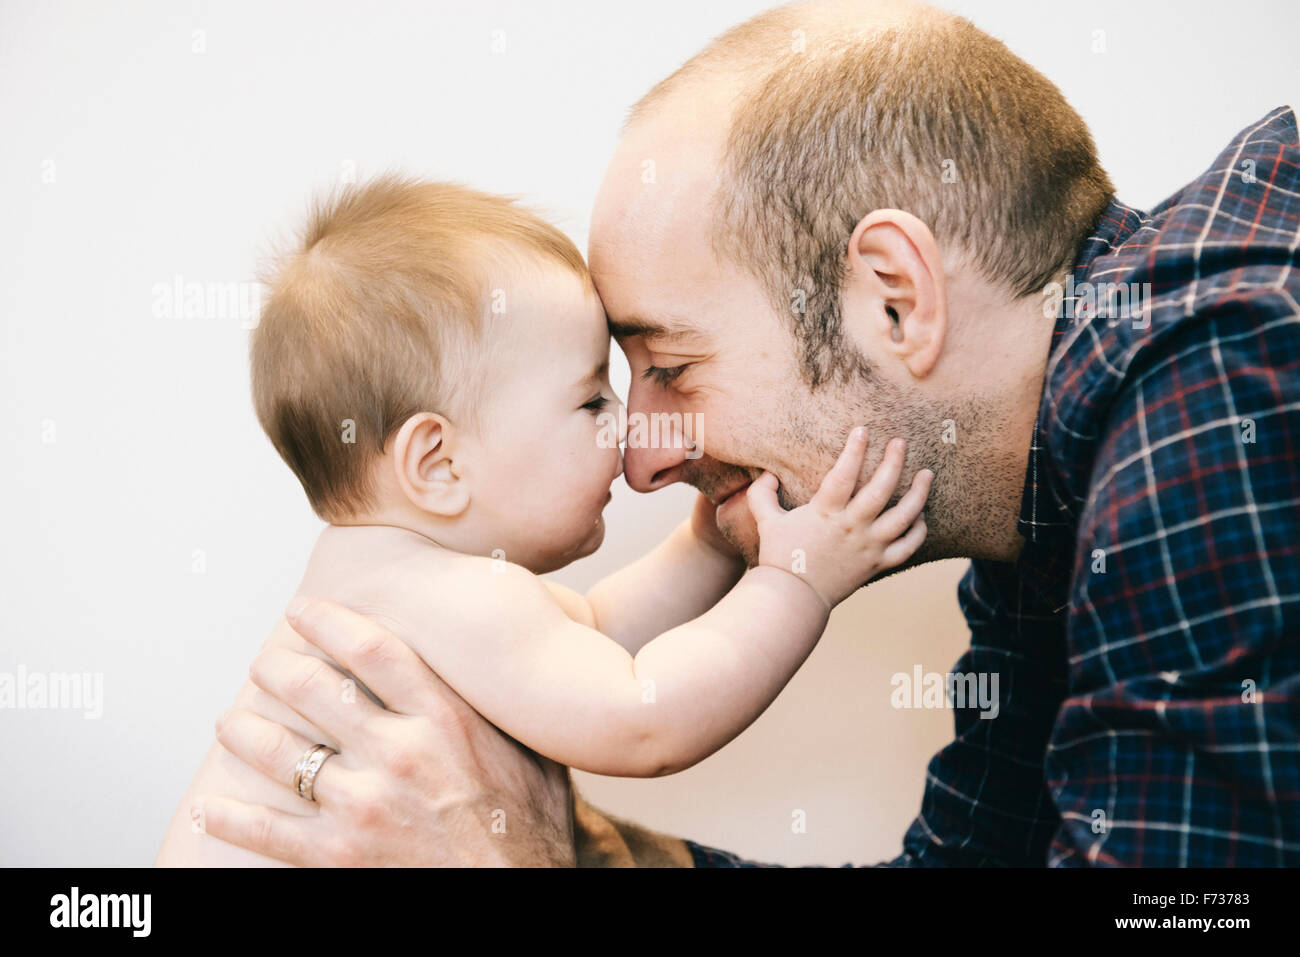 Una joven niña y su padre jugando cara a cara. Foto de stock